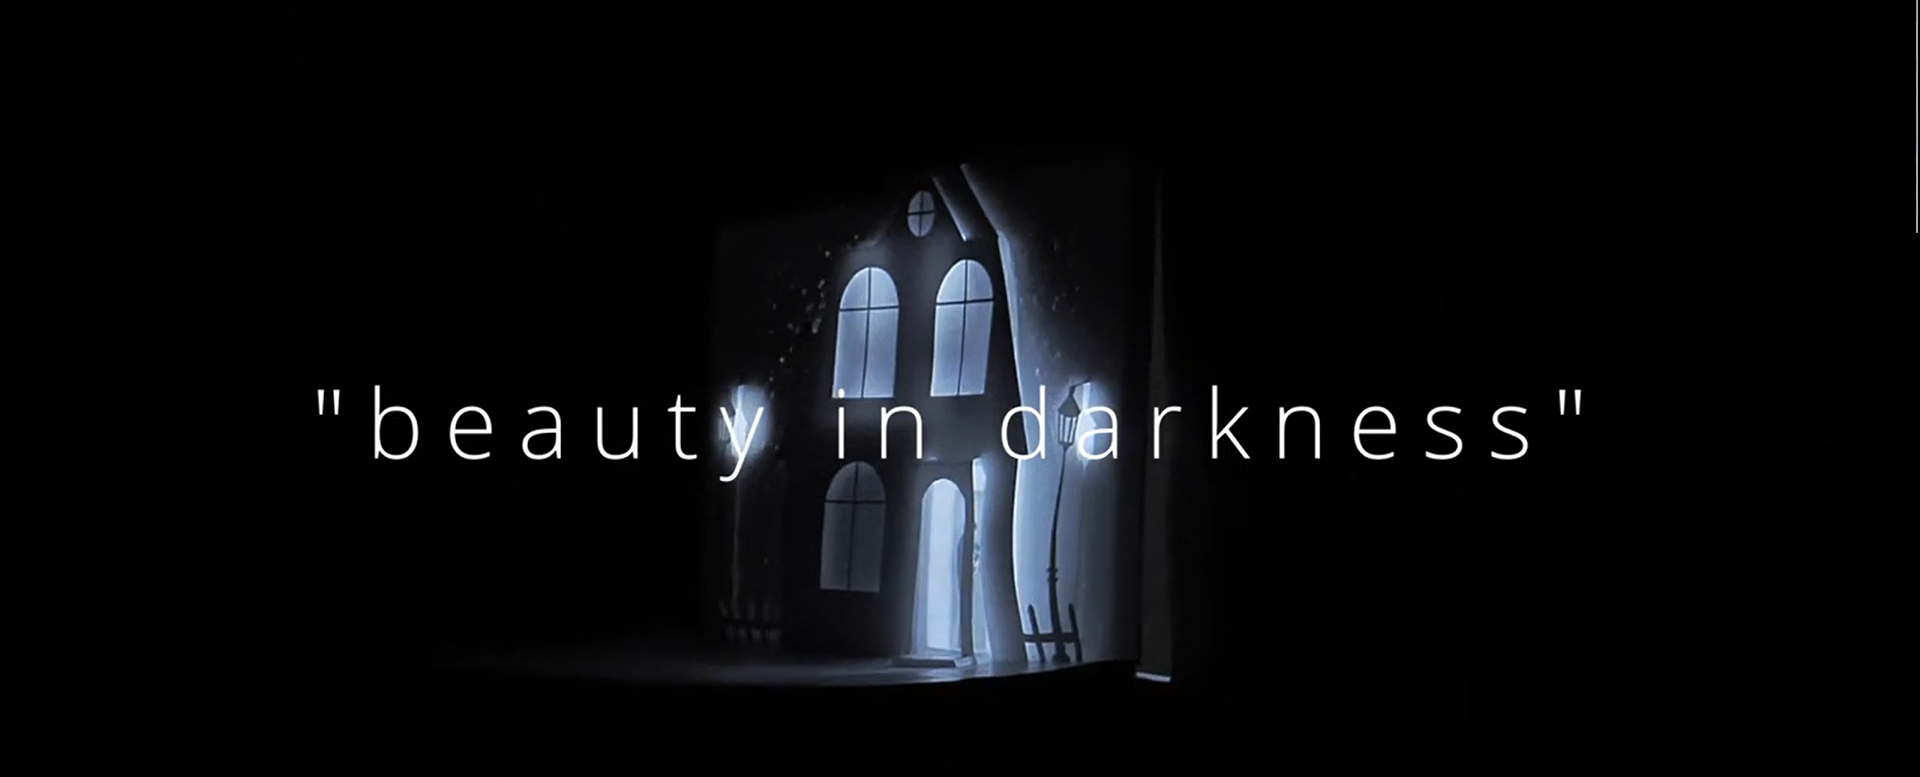 Im Vordergrund ist der Schriftzug "beauty in darkness" zu sehen. Im Hintergrund sieht man eine nächtliche Häuserzeile mit einer Straßenlaterne davor.